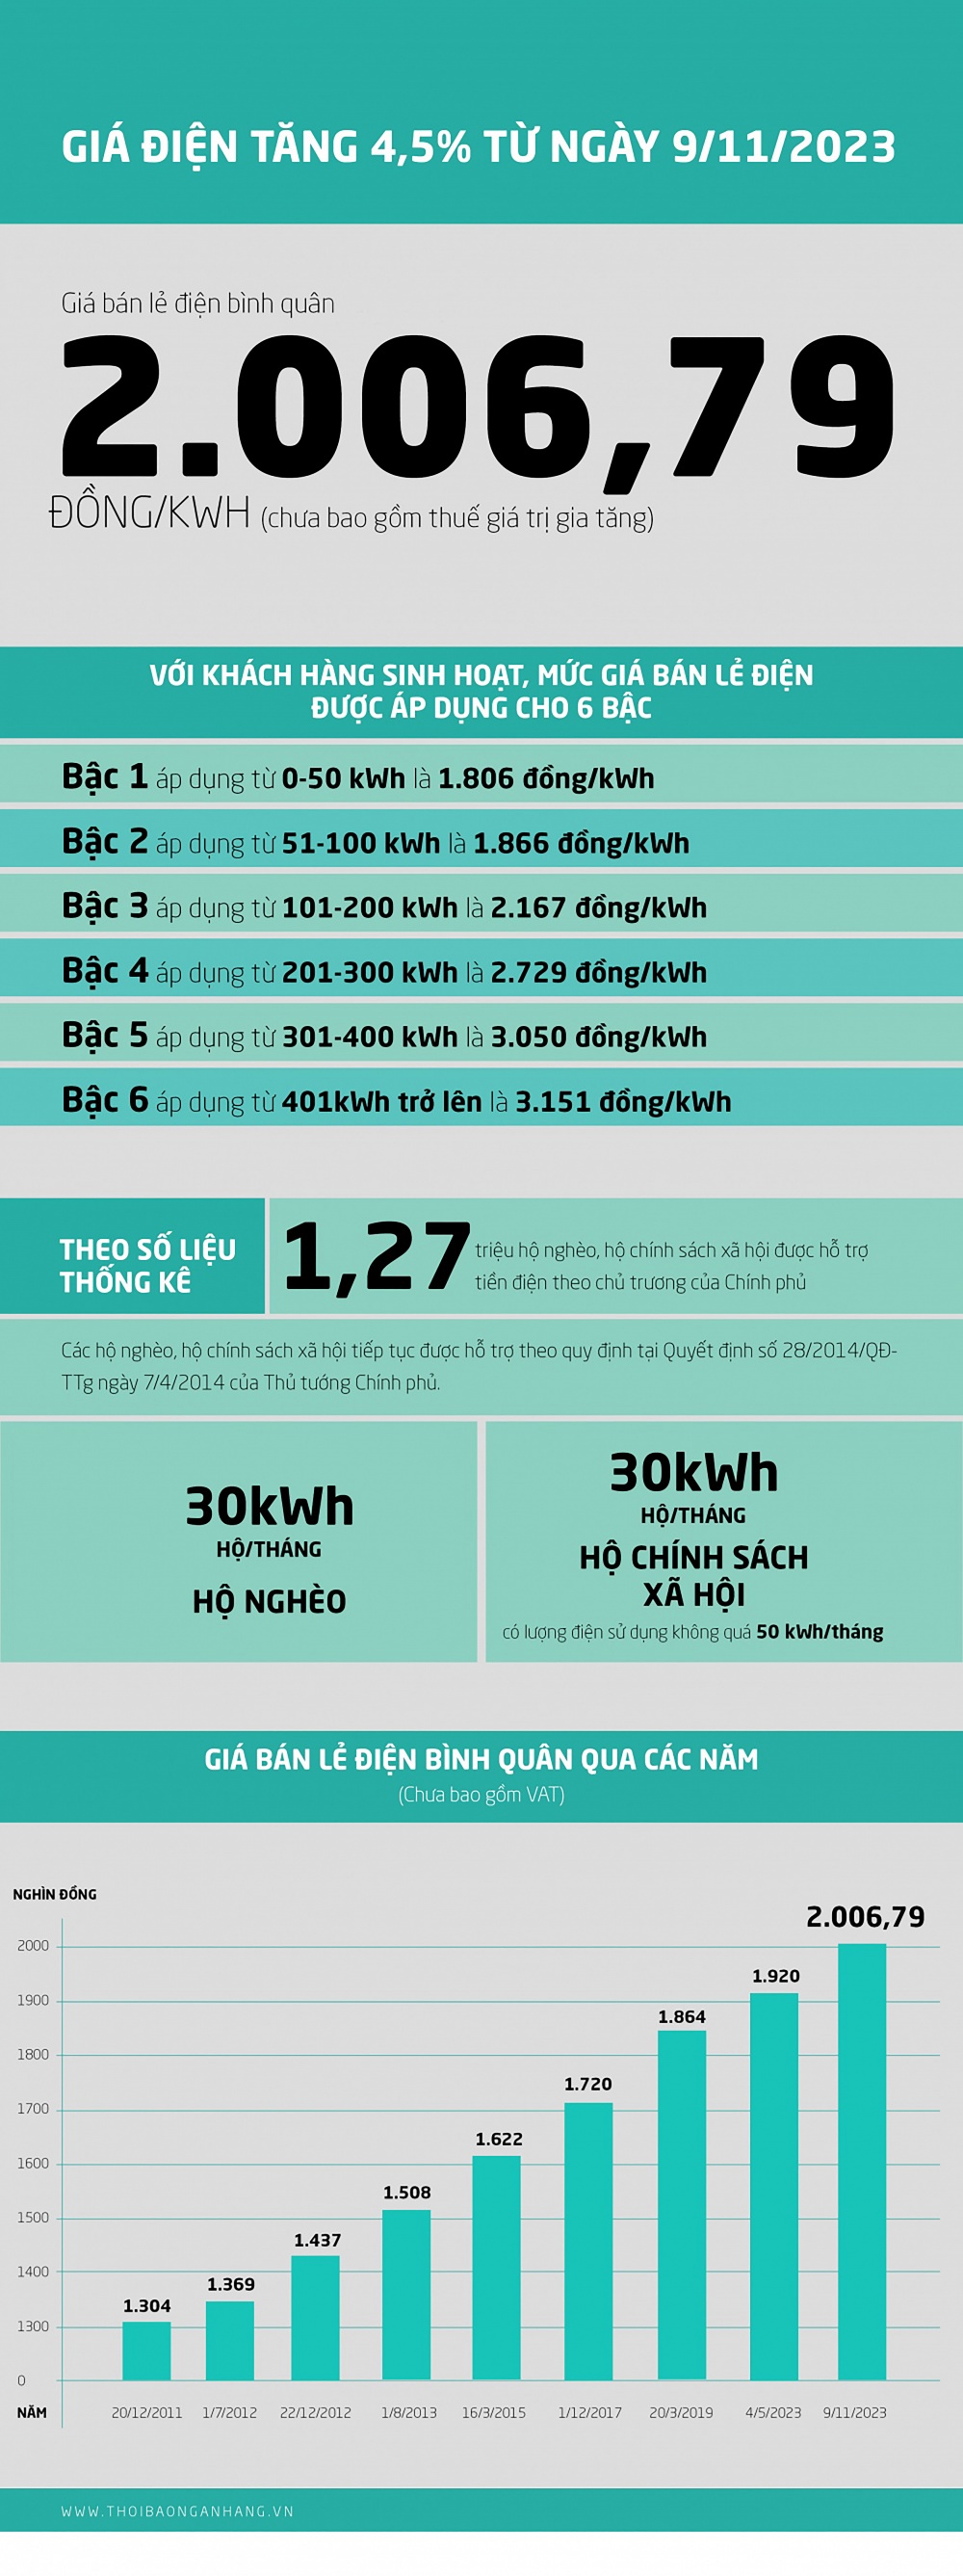 [Infographic] Giá điện tăng 4,5% từ ngày 9/11/2023